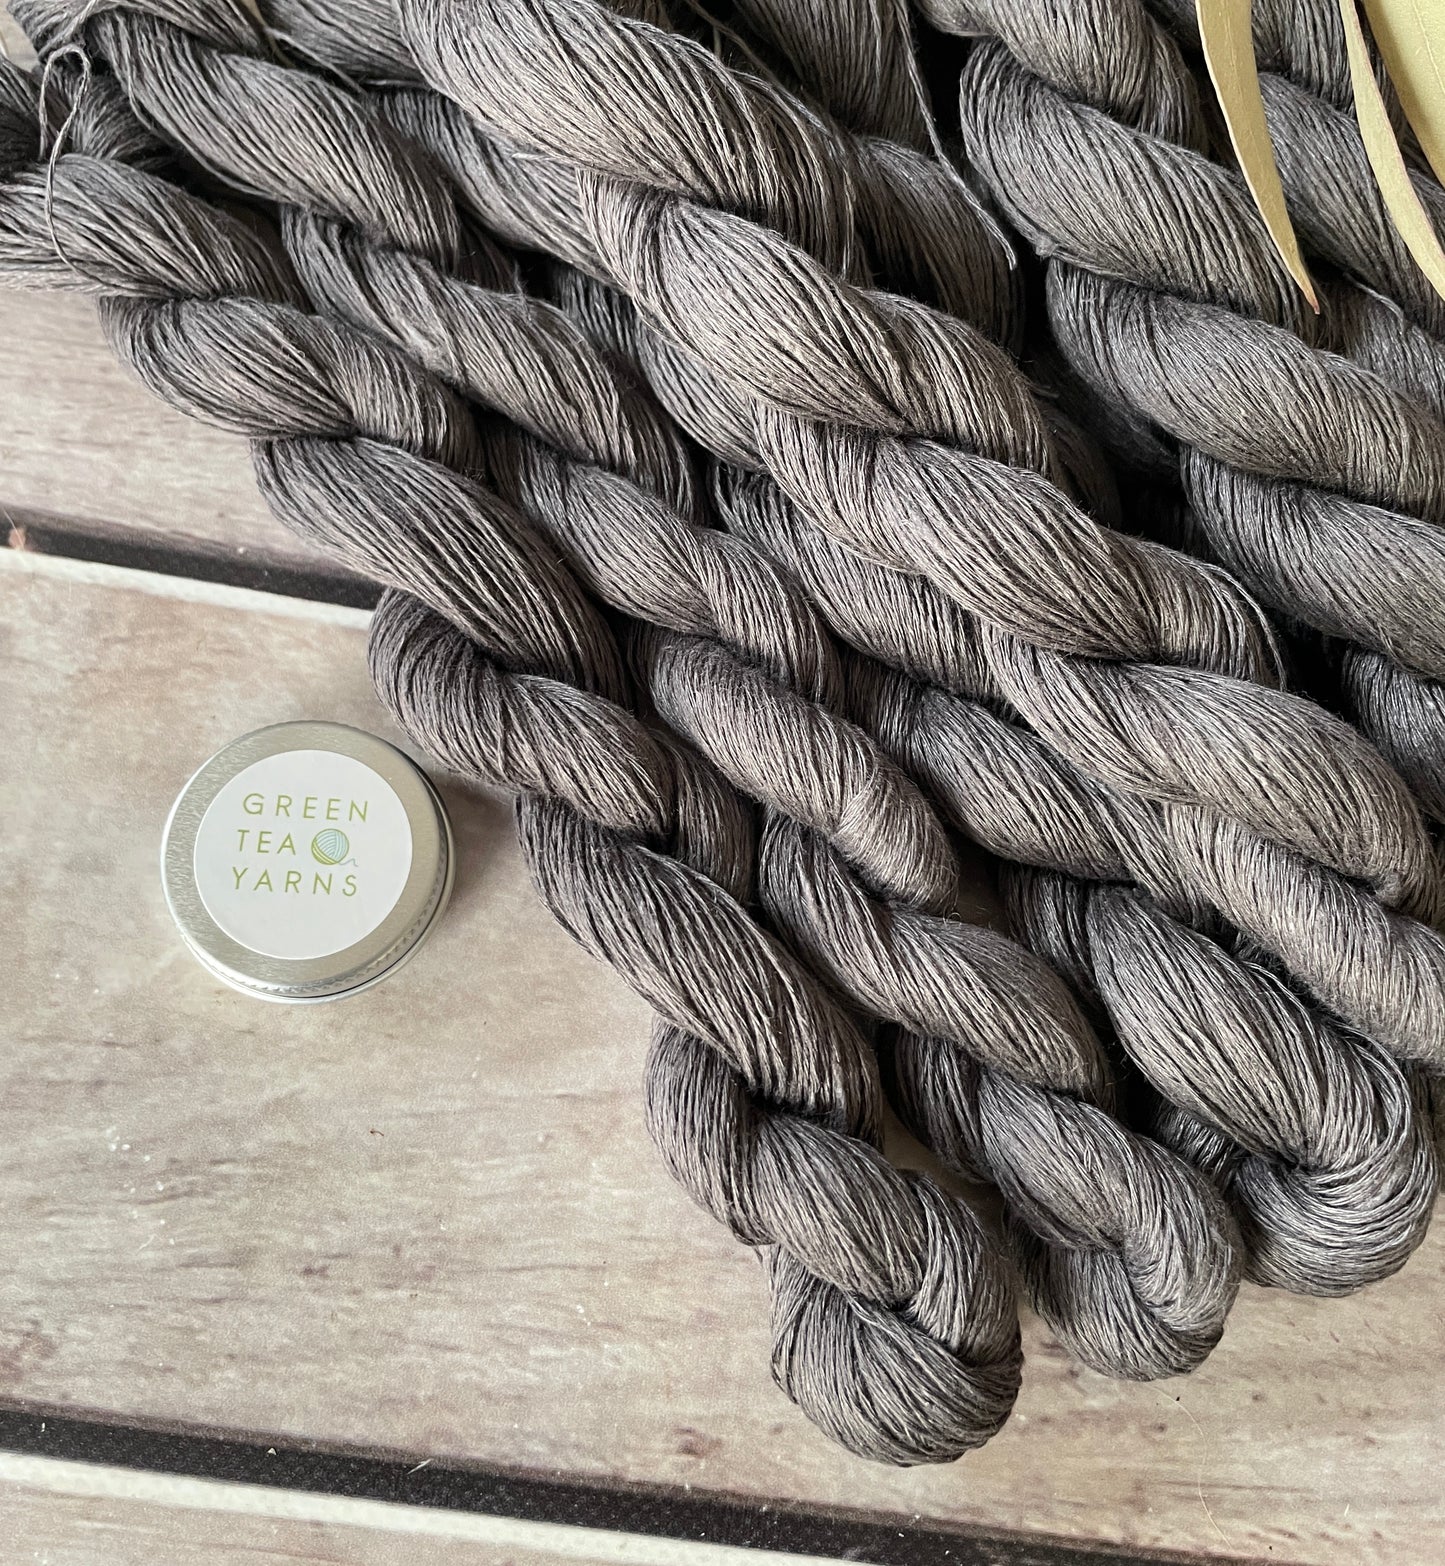 Grey Gull on Ceylon pure linen yarn - 50 gm skeins